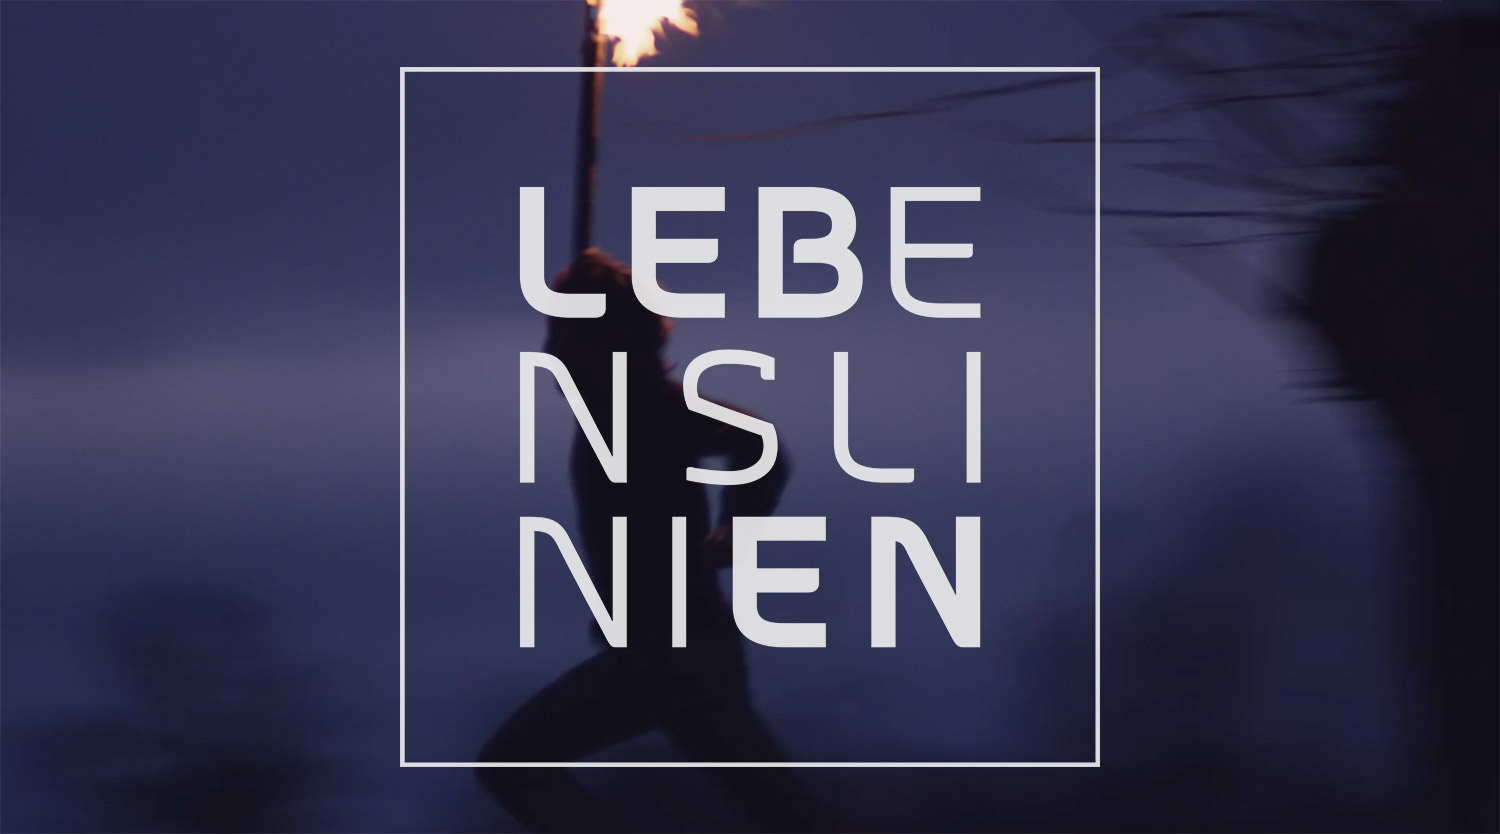 Lebenslinen, Bayerisches Fernsehen, BR, Lebenslinien, TV Intro, Design